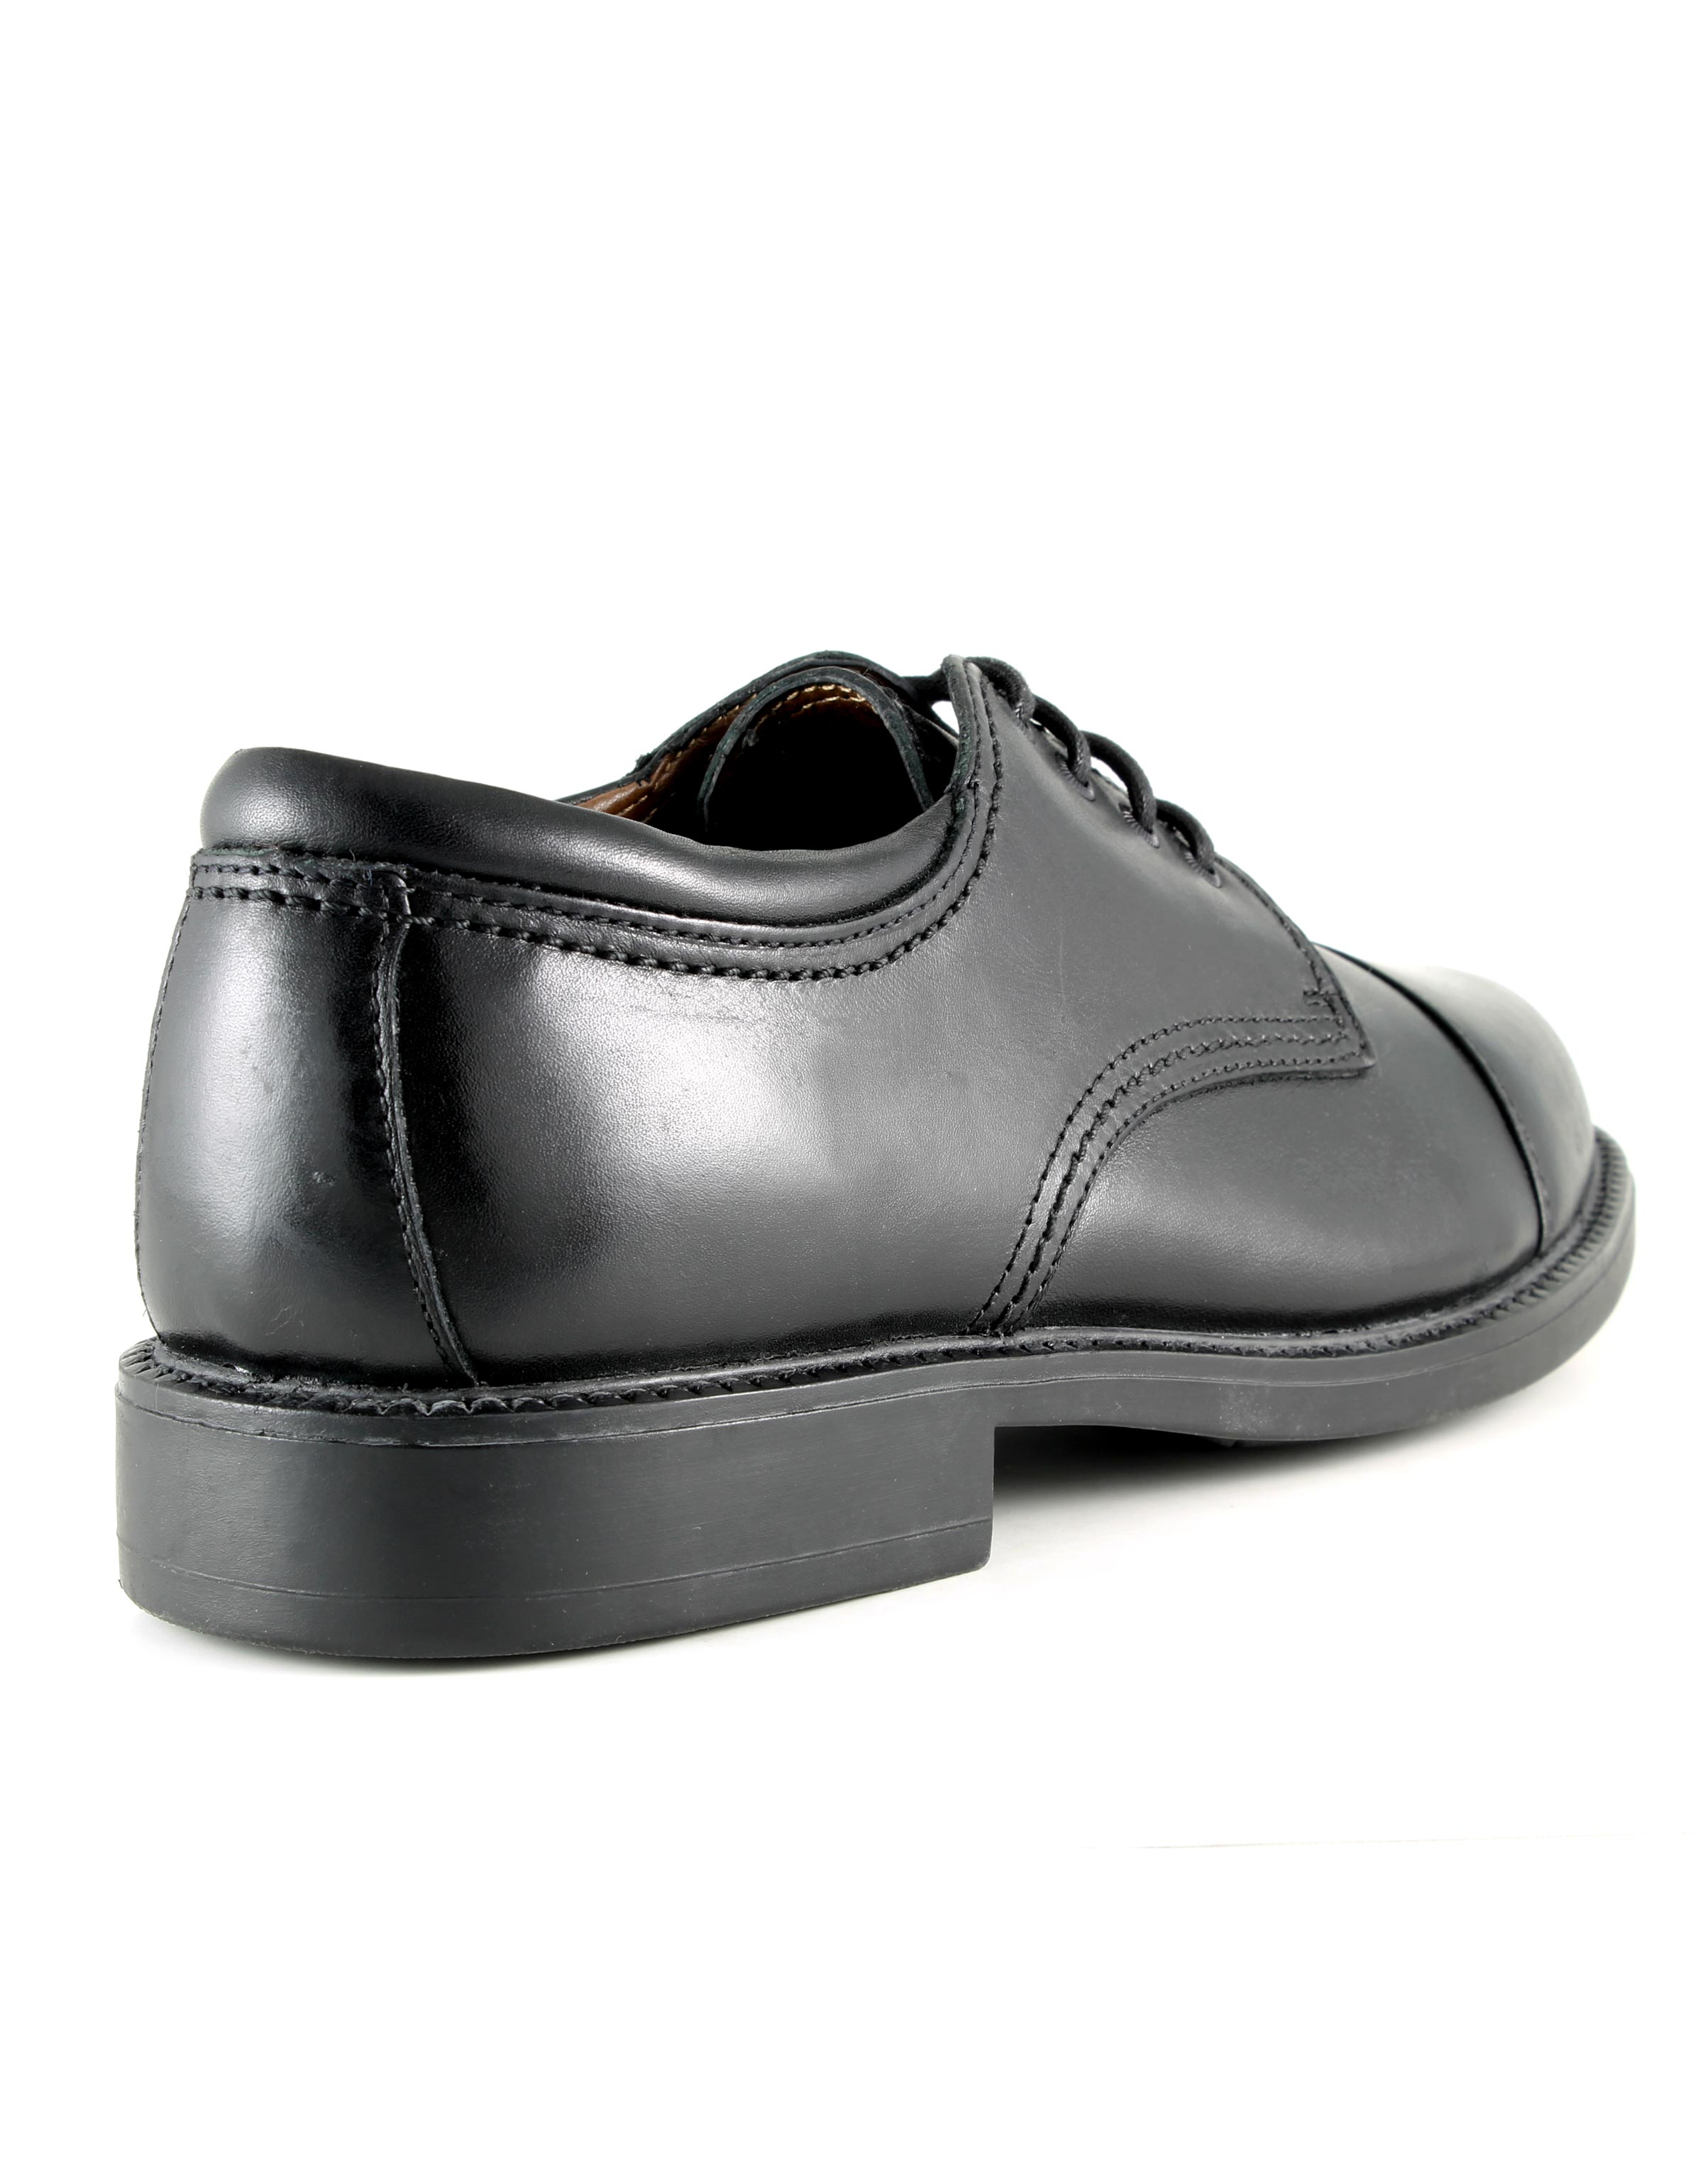 Dockers Men's Gordon Dress Shoe in Black, 8.5 US | Walmart Canada